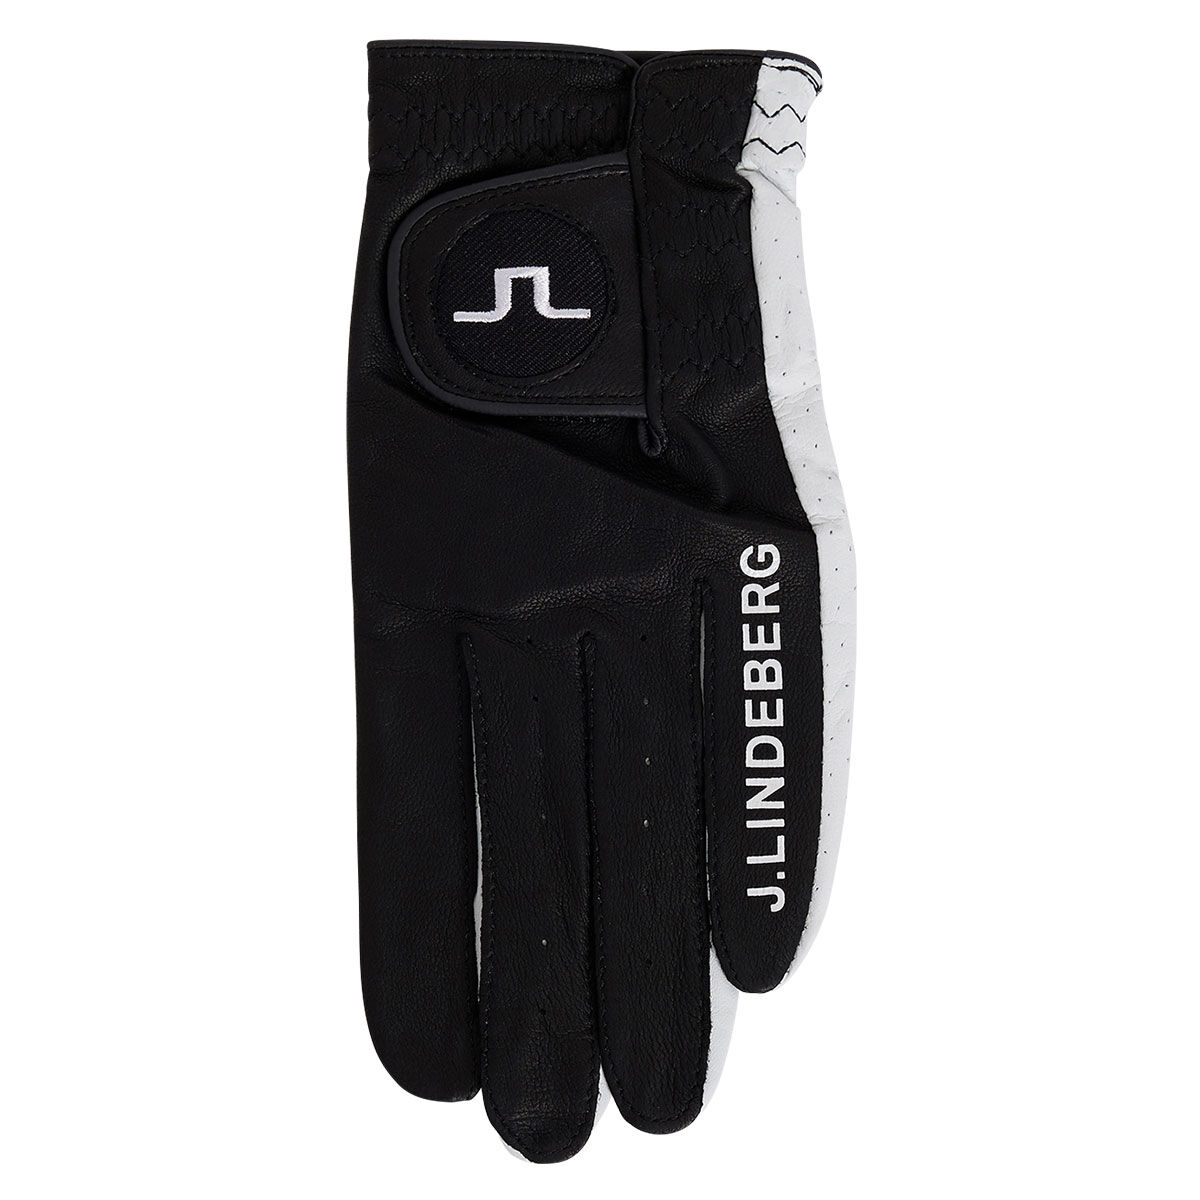 J.Lindeberg Mens Black Adjustable Ron Leather Left Hand Golf Glove, Size: Medium/Large | American Golf